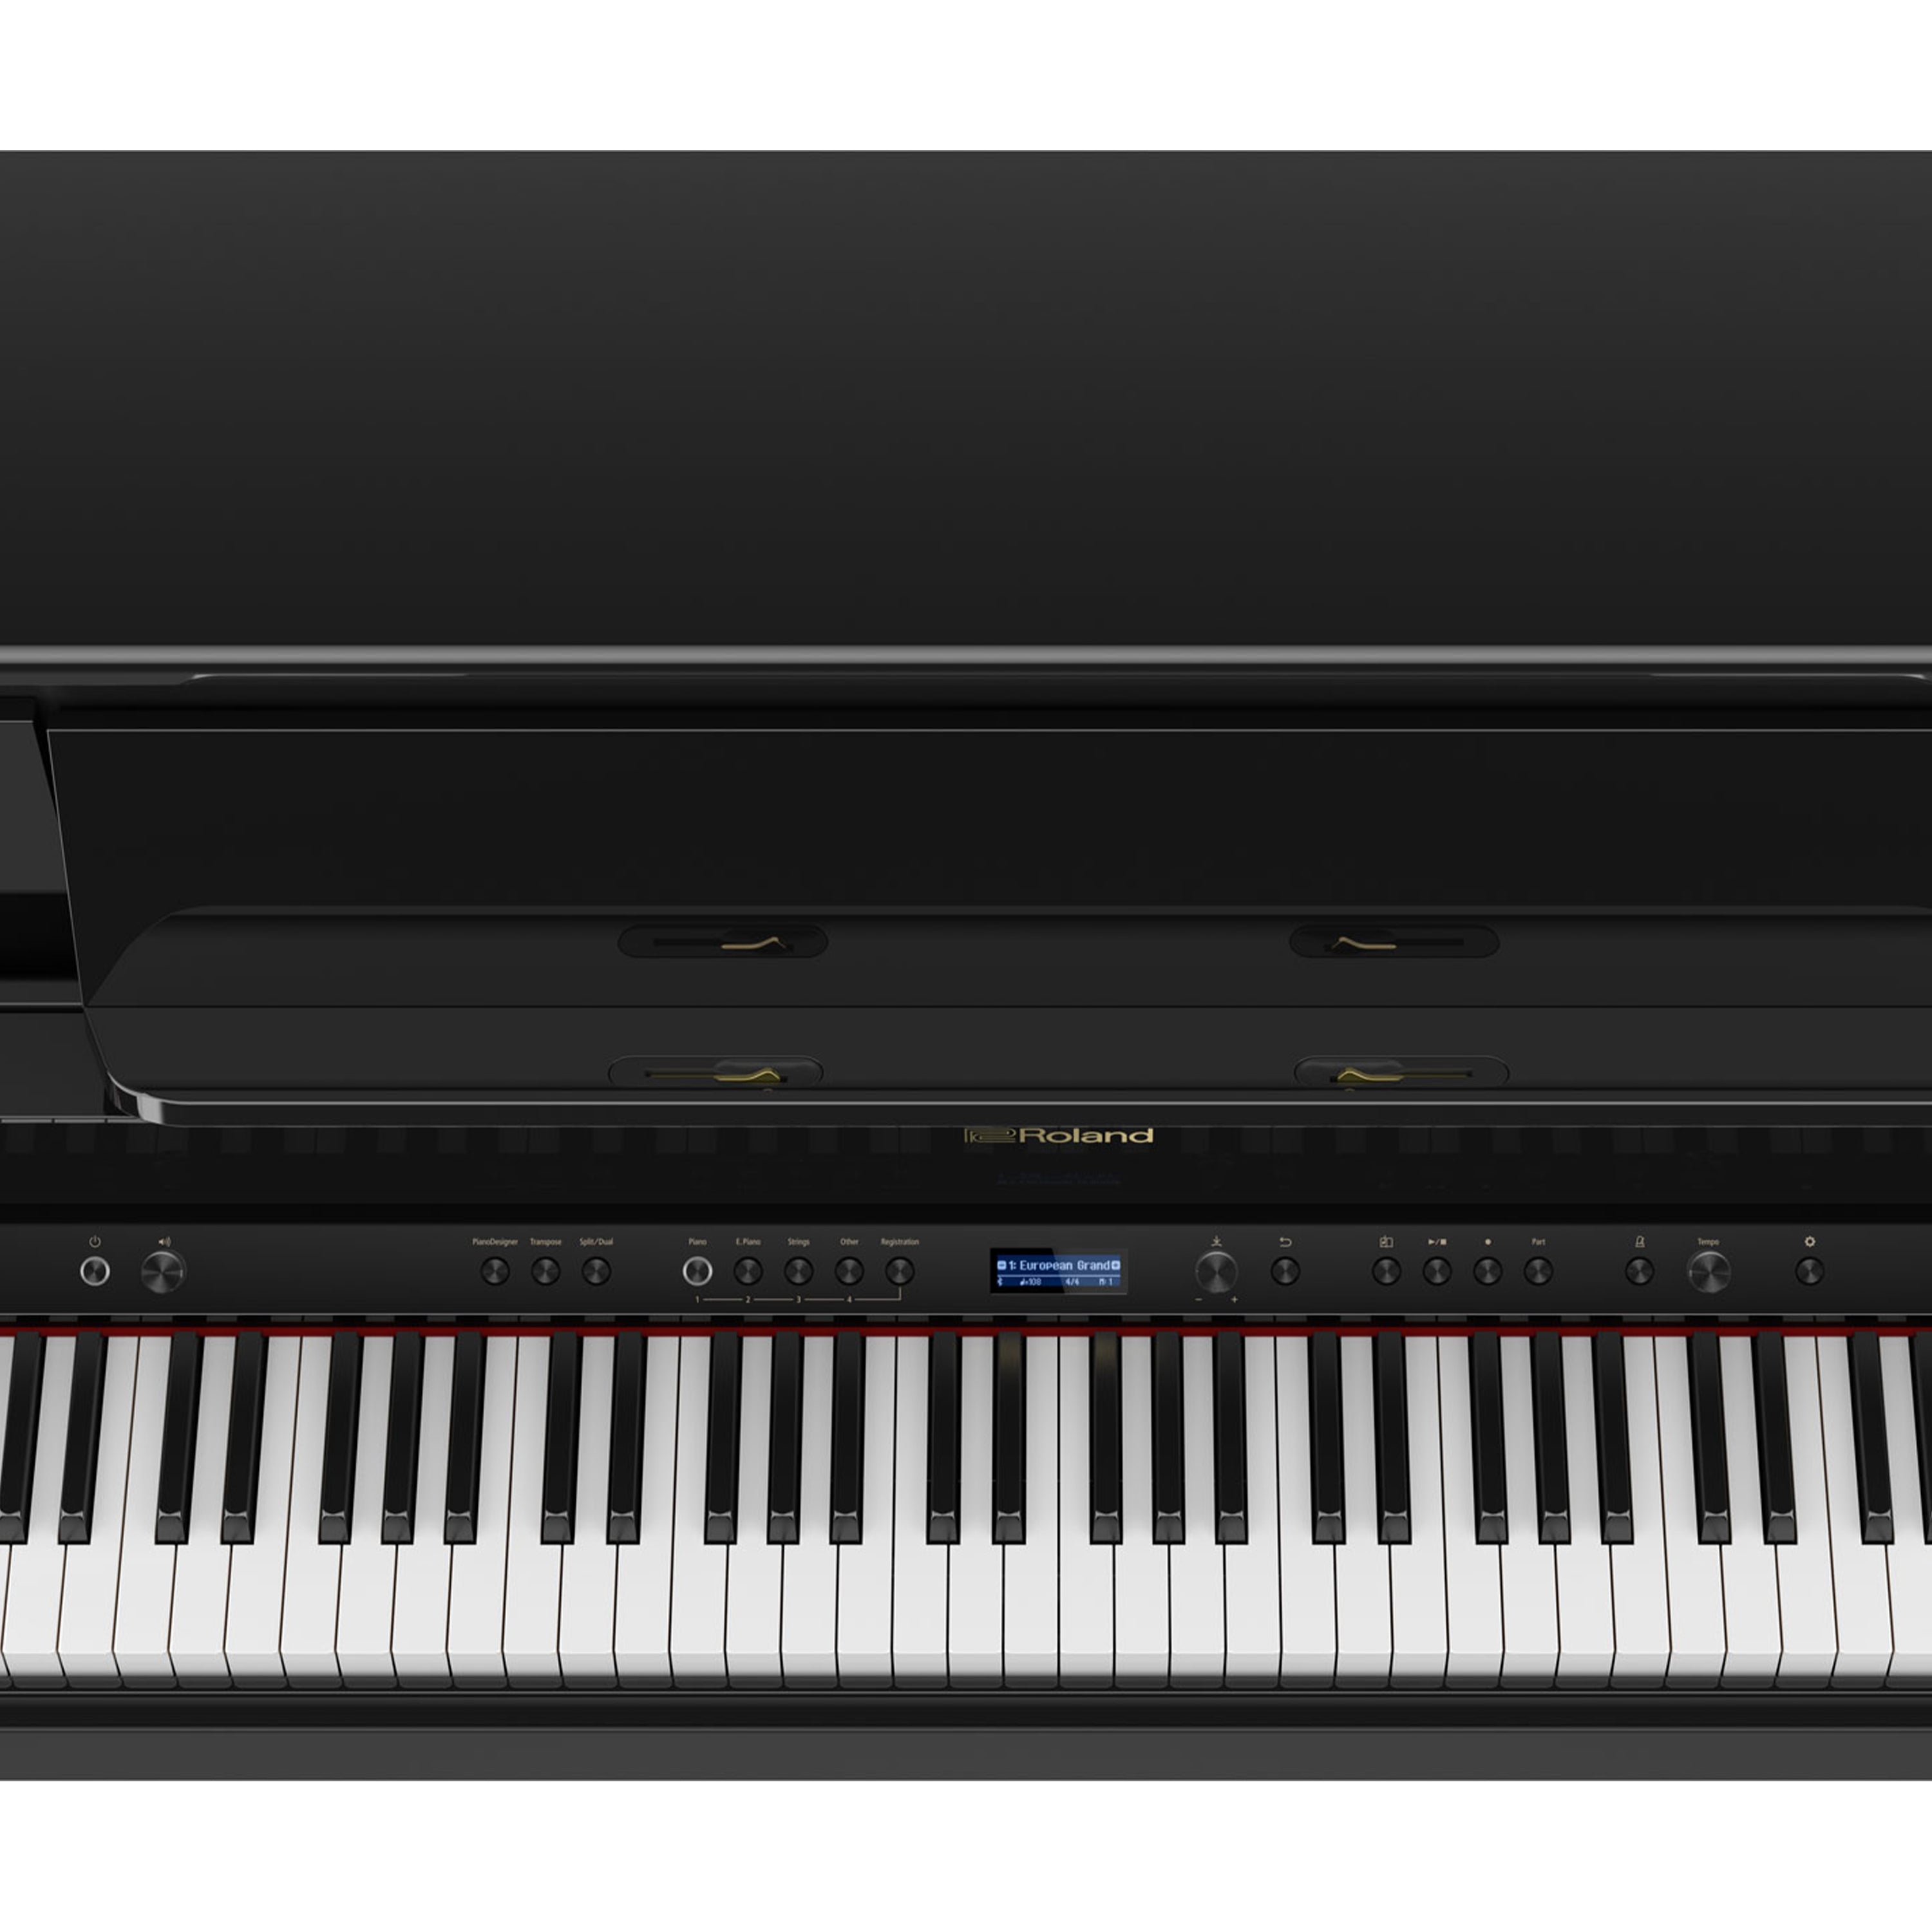 Roland LX708 Digital Piano - Charcoal Black - controls